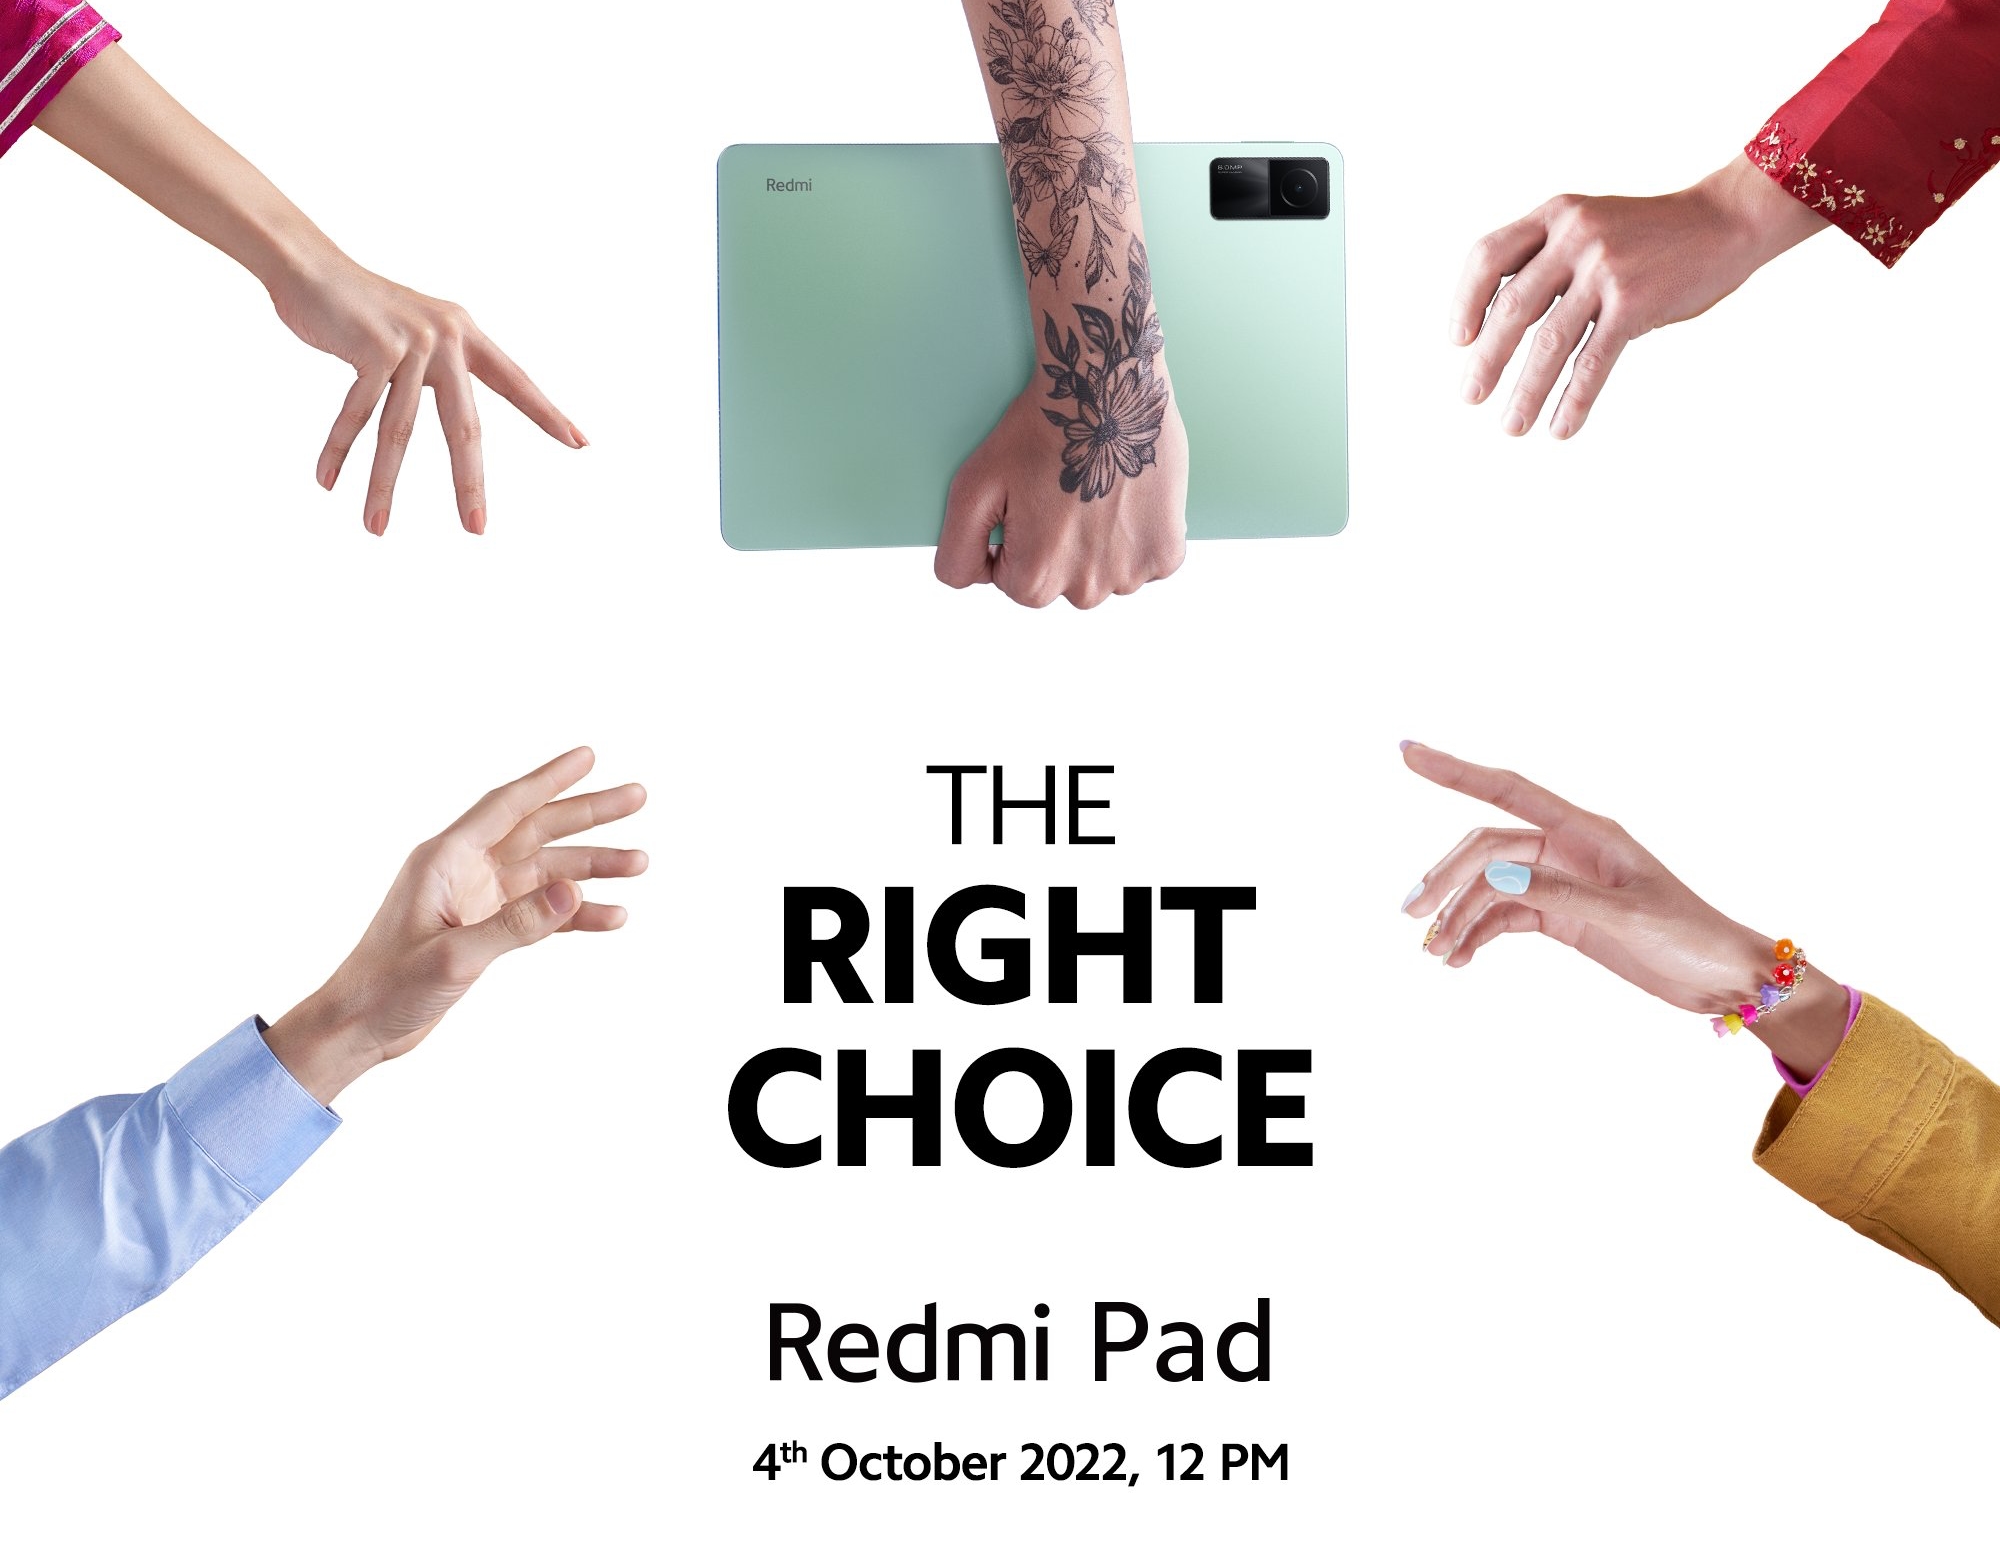 Confirmado: El Redmi Pad con chip MediaTek, pantalla de 11 pulgadas y batería de 8000 mAh se presentará el 4 de octubre